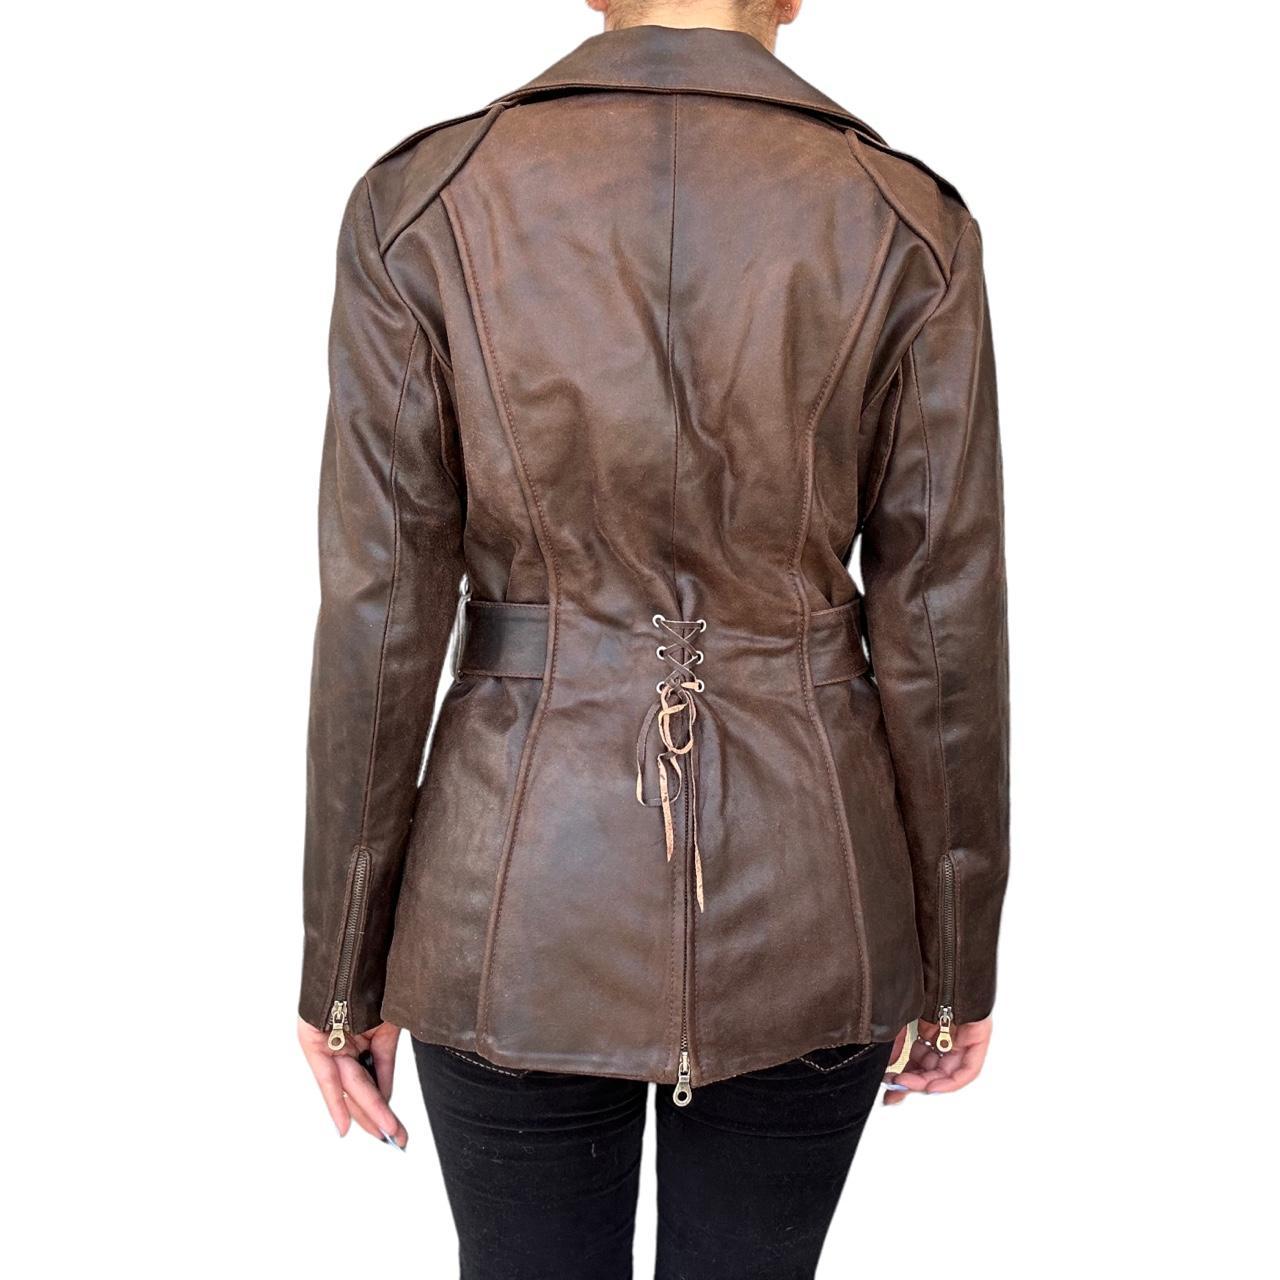 Vintage brown leather jacket bikercore motorcycle - Depop